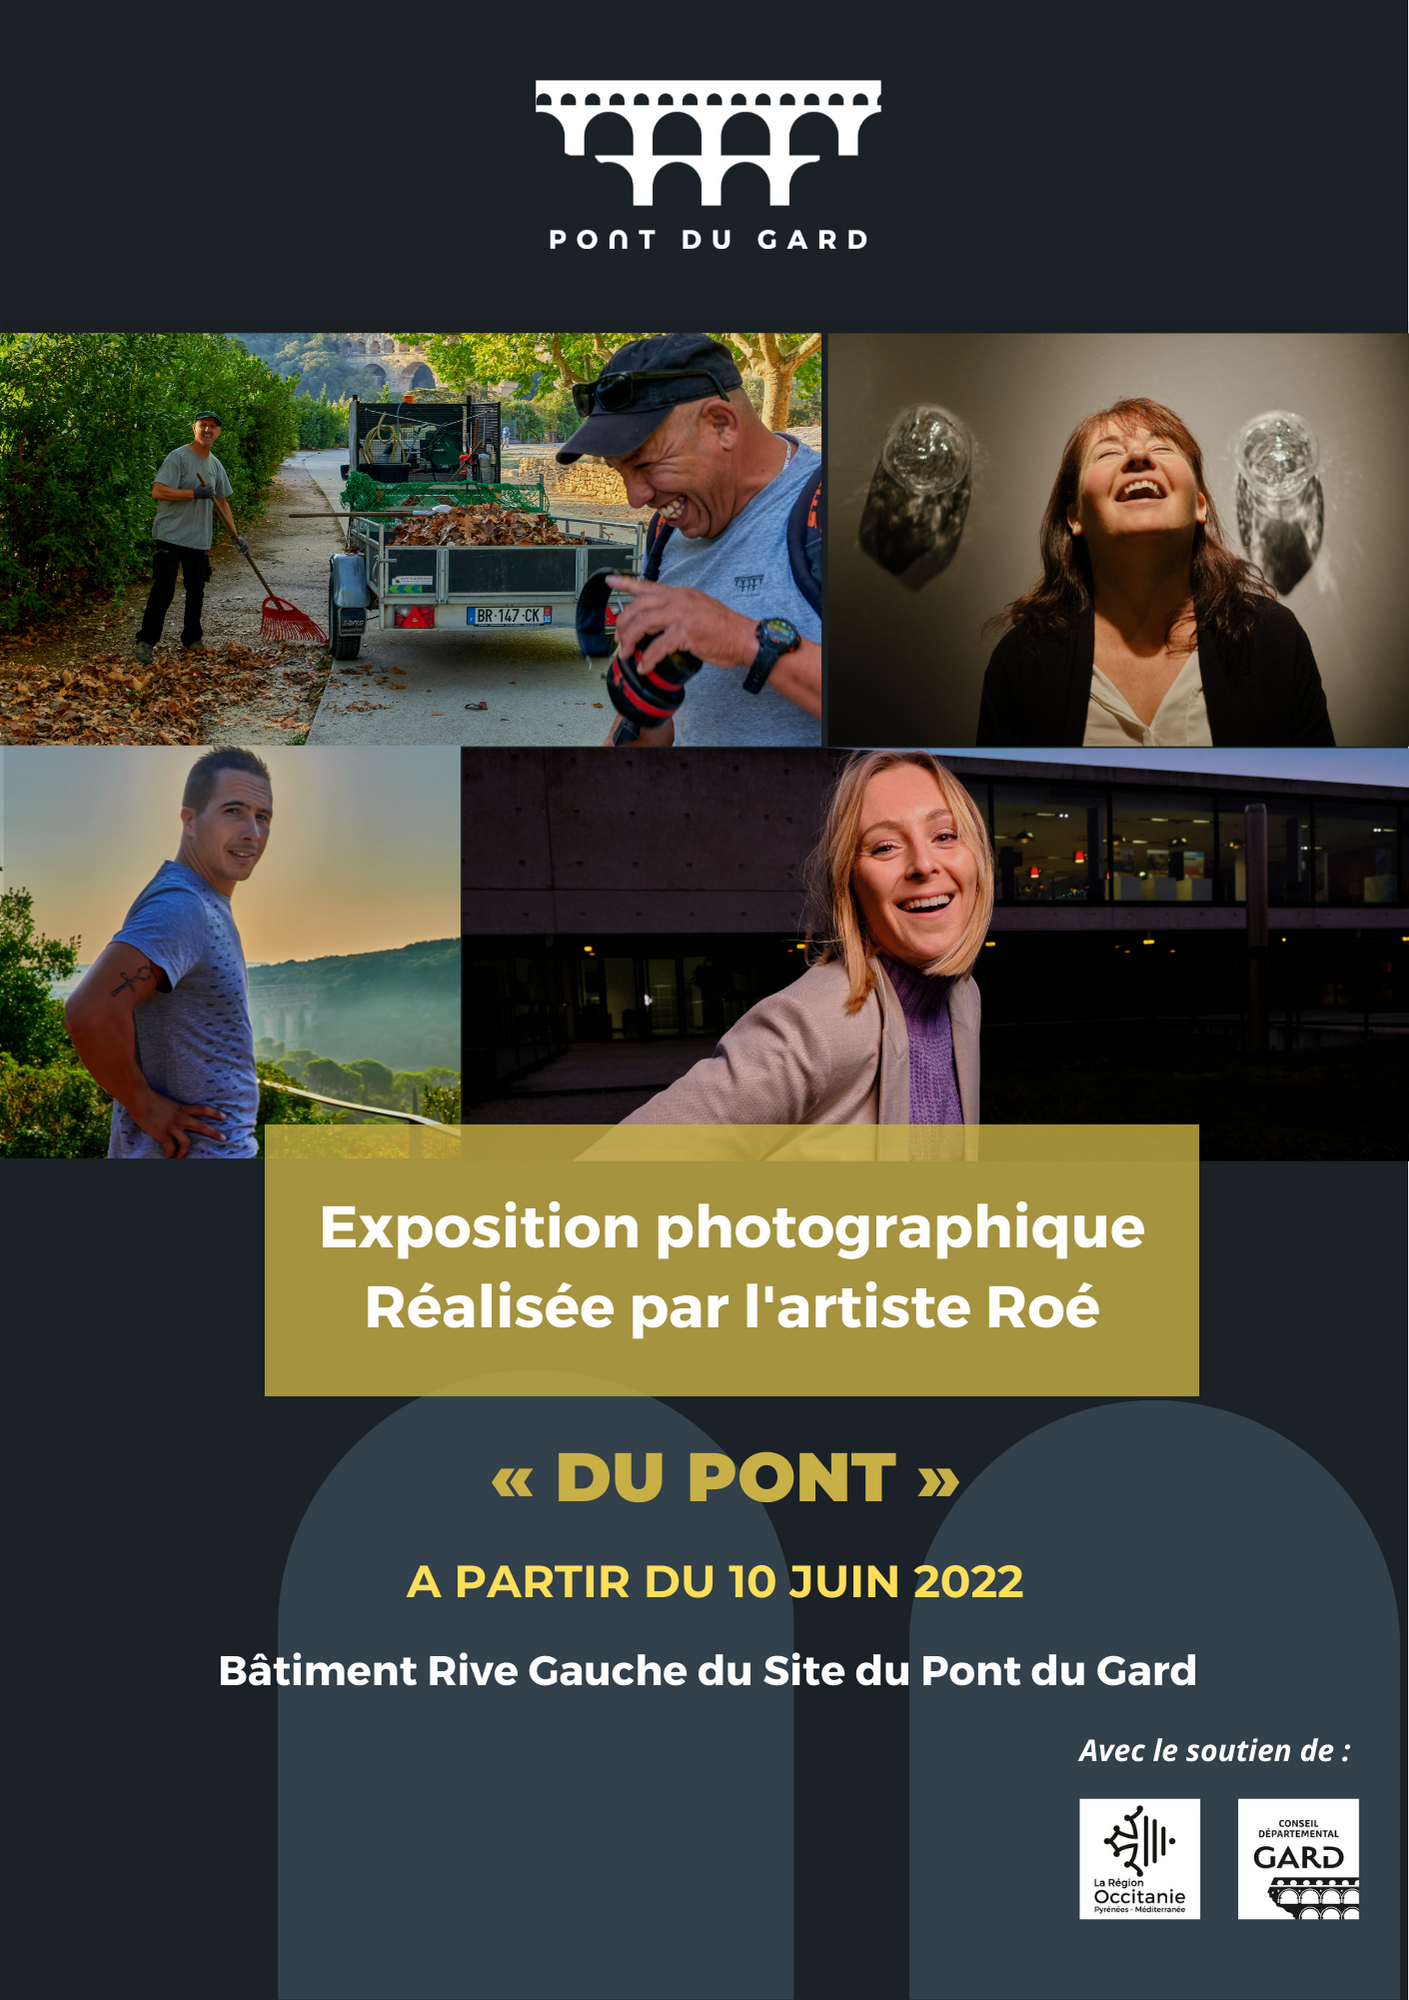 Expo "Du Pont"